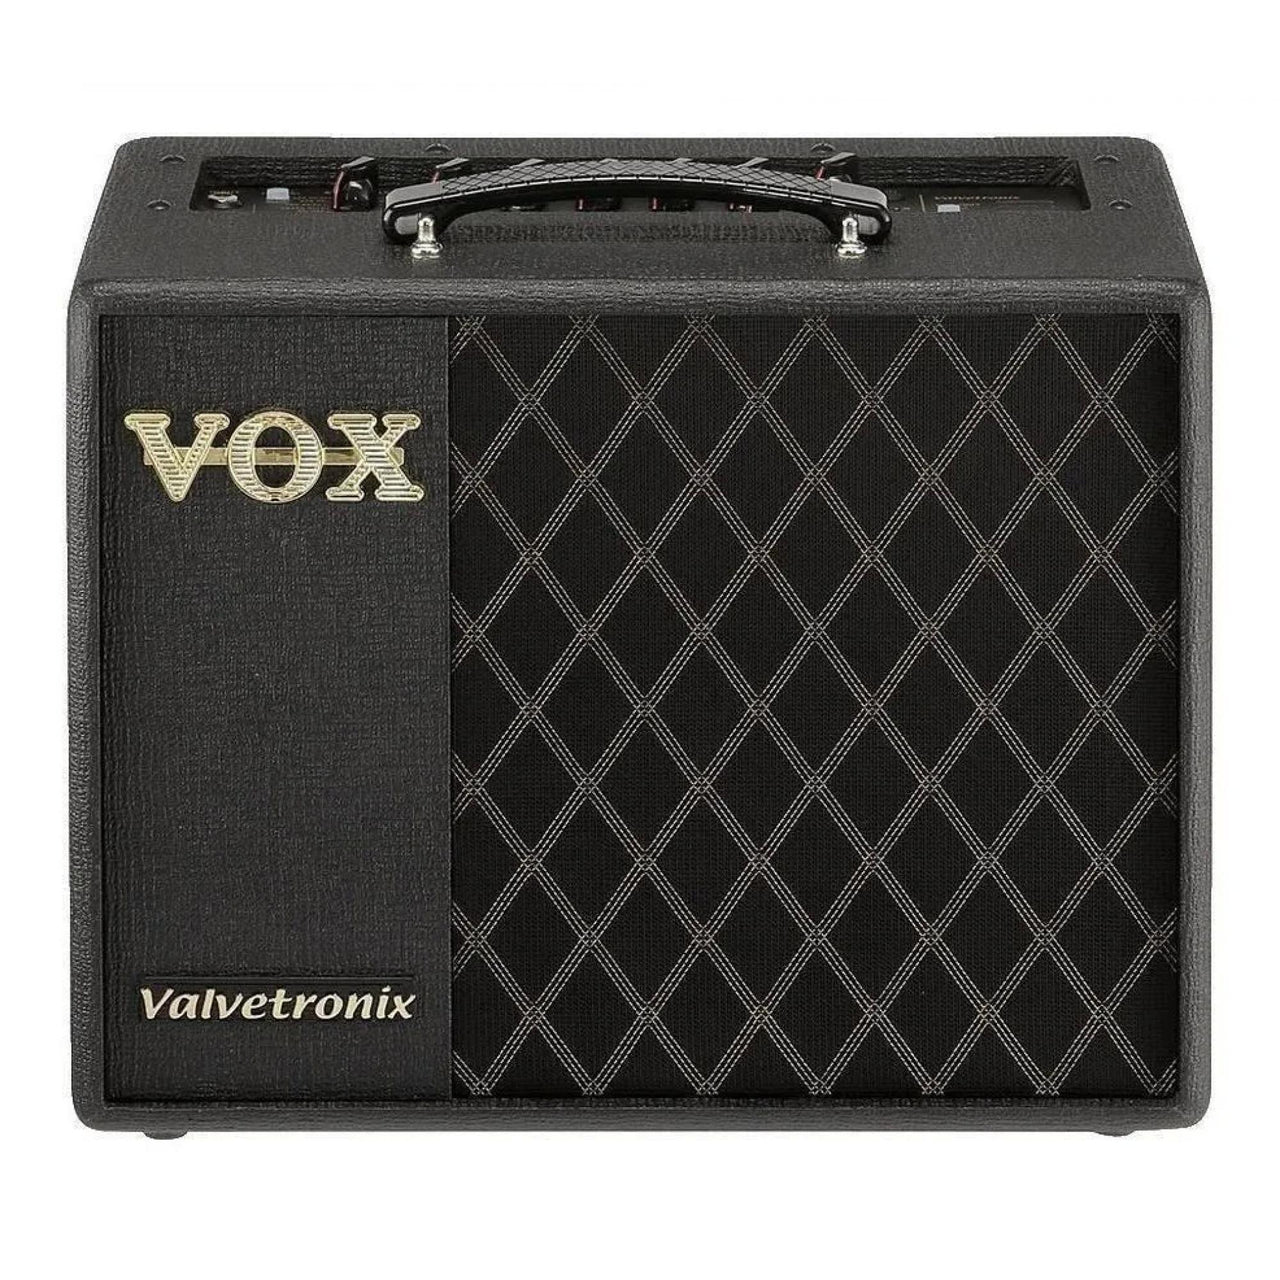 Amplificador Vox P/guitarra Modelado Digital 20w, Vt20x